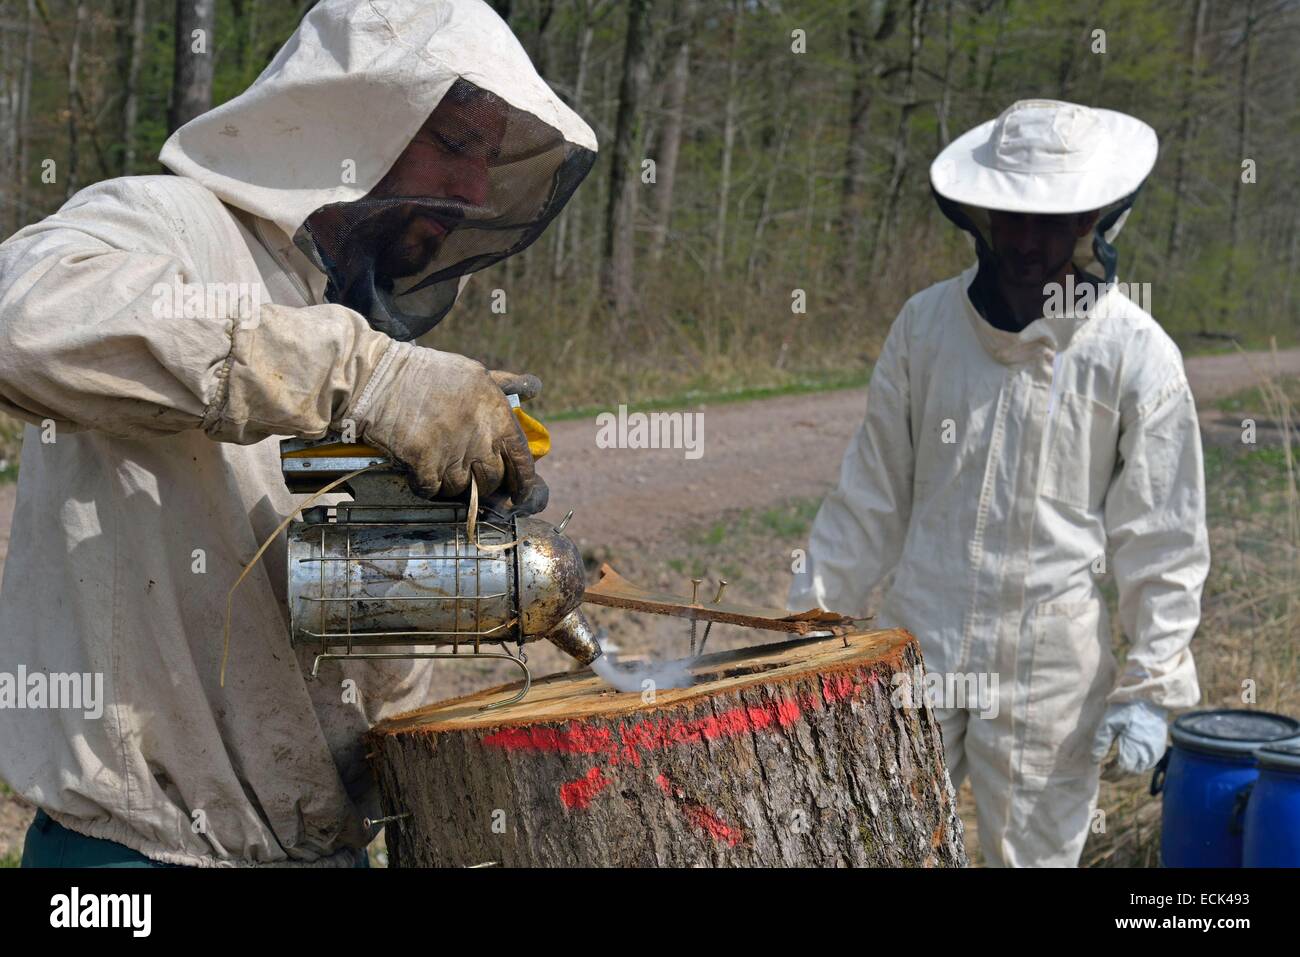 Francia, Haute Saône, apicultores actuando con un bosque essain smokehouse de abejas (Apis mellifera) alojado en el tronco de un árbol de roble con el fin de transferirlo a una colmena Foto de stock